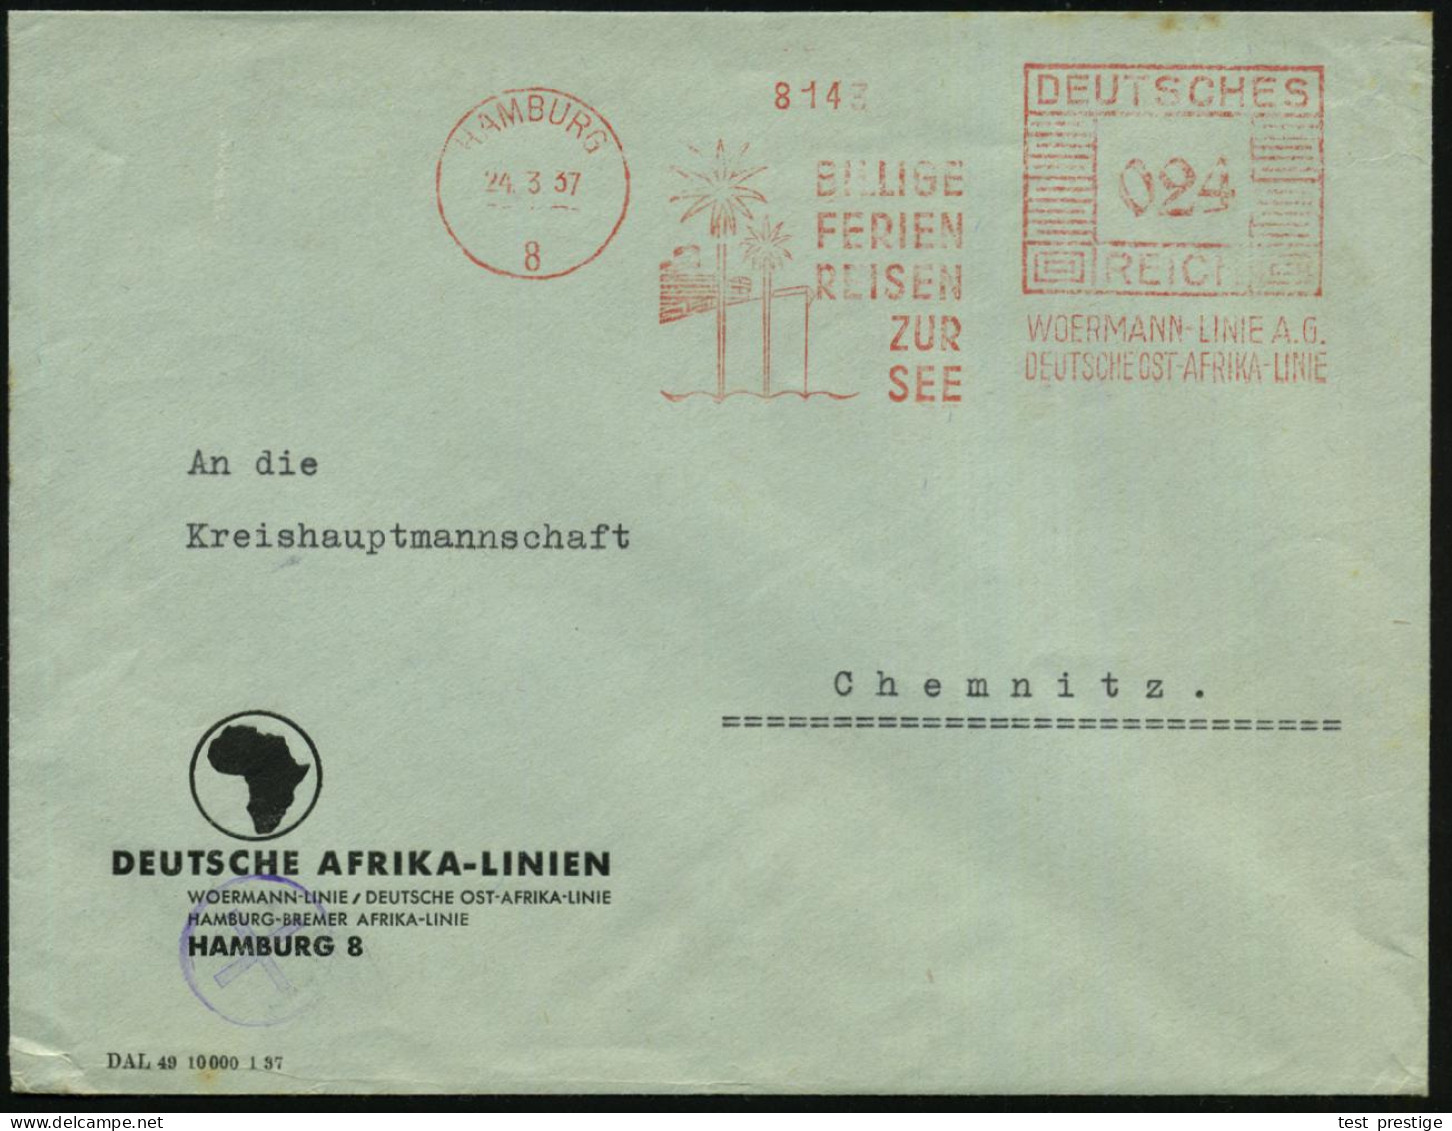 HAMBURG/ 8/ BILLIGE/ FERIEN/ REISEN/ ZUR/ SEE/ WOERMANN-LINIE AG/ DT.AFRIKA-LINIE 1937 (24.3.) AFS Francotyp = Palmen Vo - Maritime